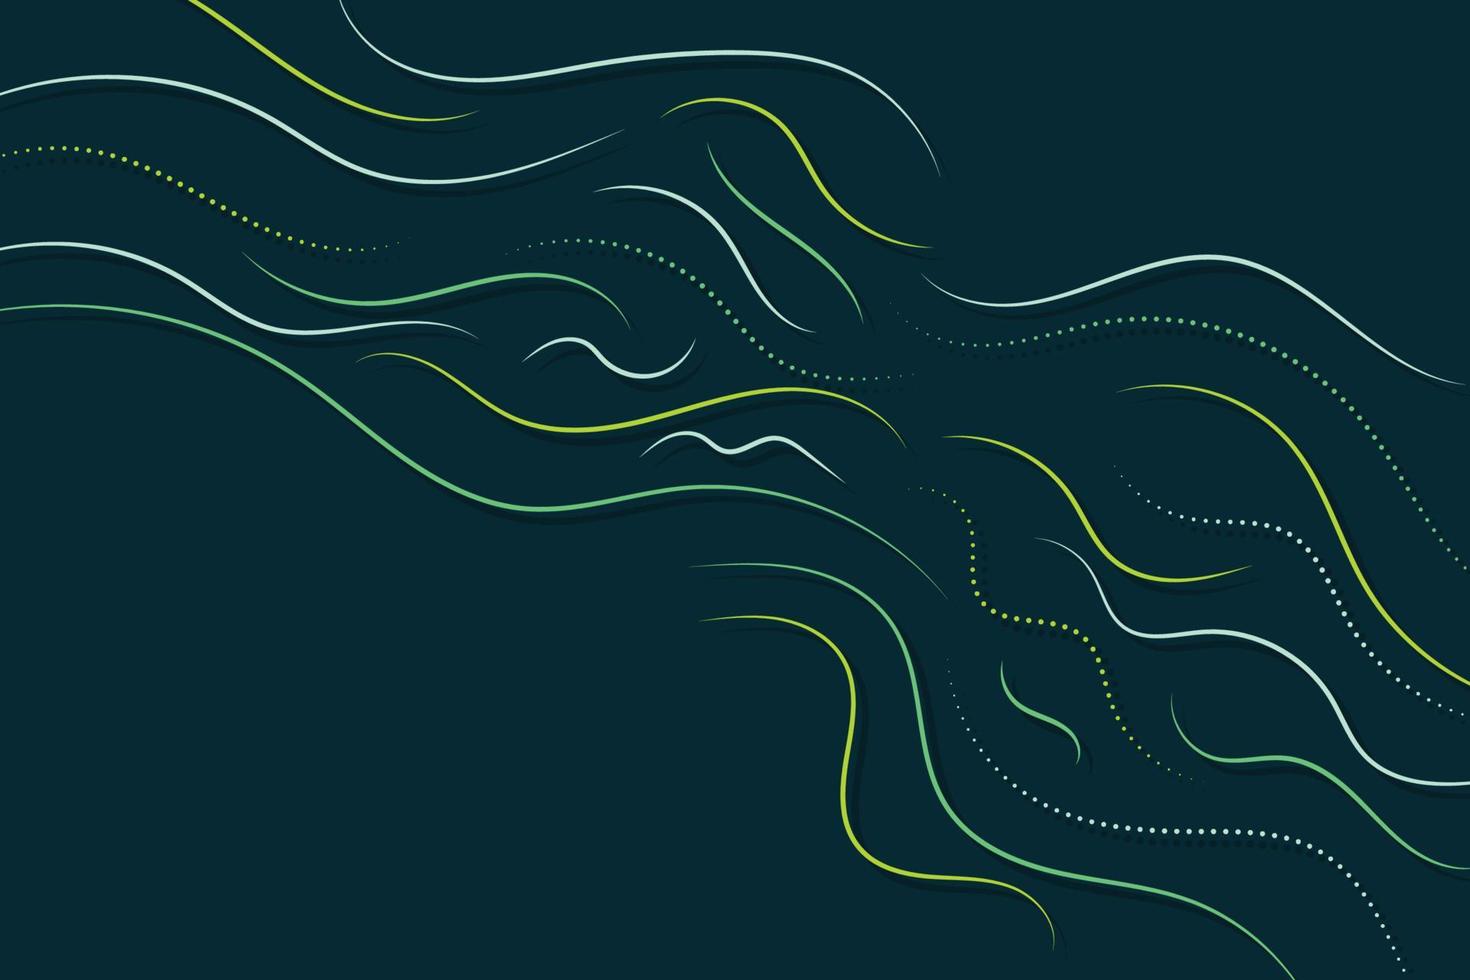 líneas onduladas verdes y amarillas simples y minimalistas sobre fondo negro. ondas de líneas finas abstractas y formas geométricas punteadas ilustración de fondo vector